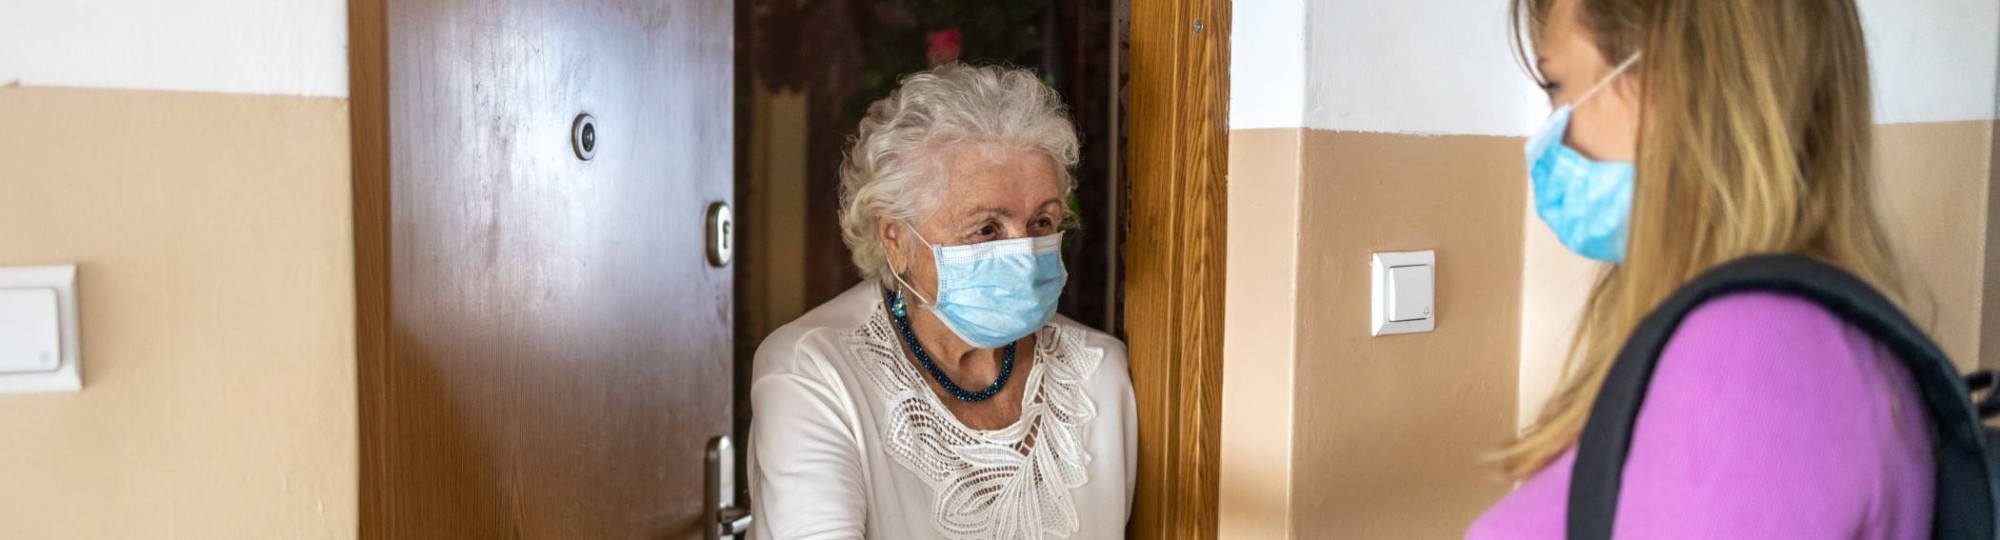 Een mantelzorgen komt tijdens coronatijd boodschappen brengen bij een oudere dame thuis. Met mondkapje.